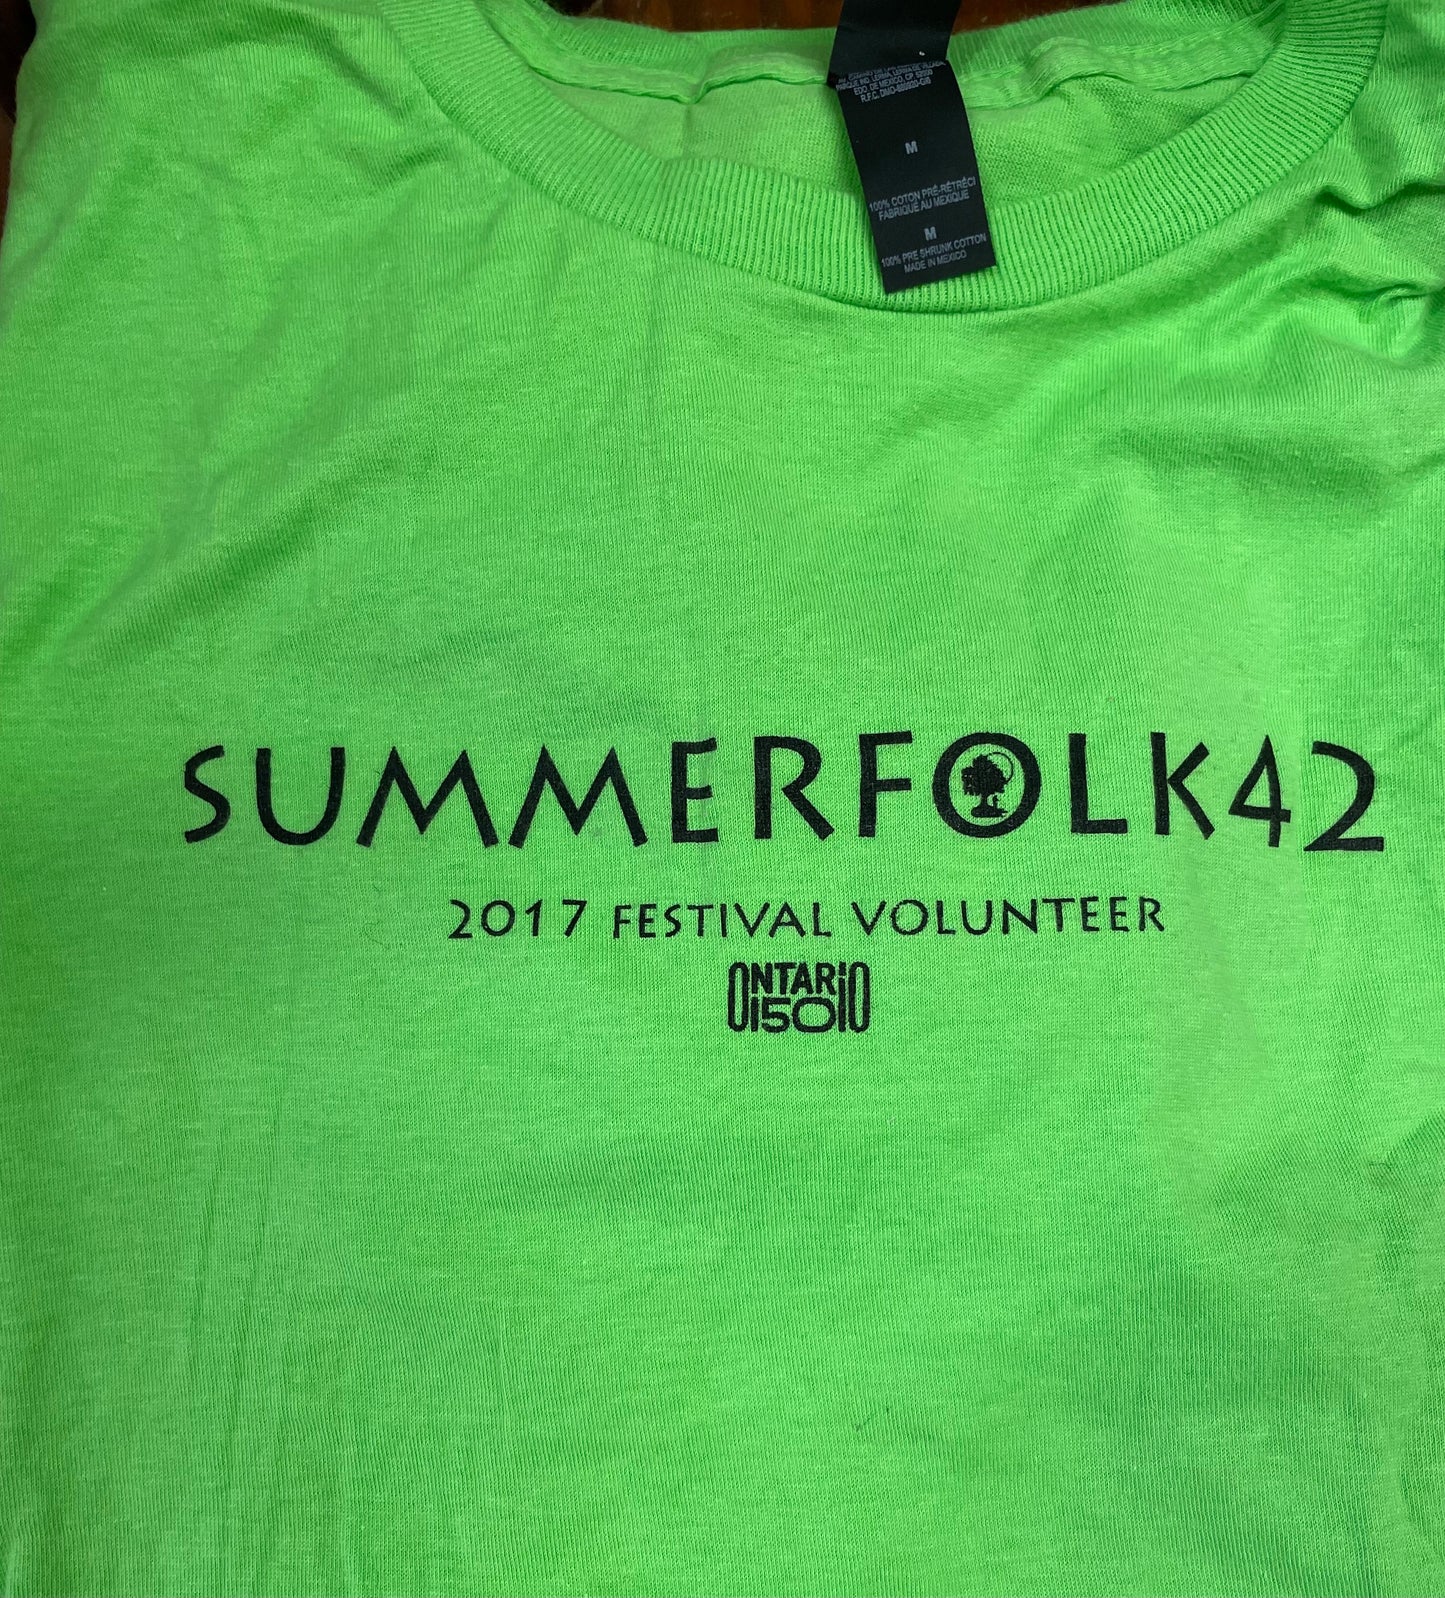 Vintage Summerfolk T-Shirts